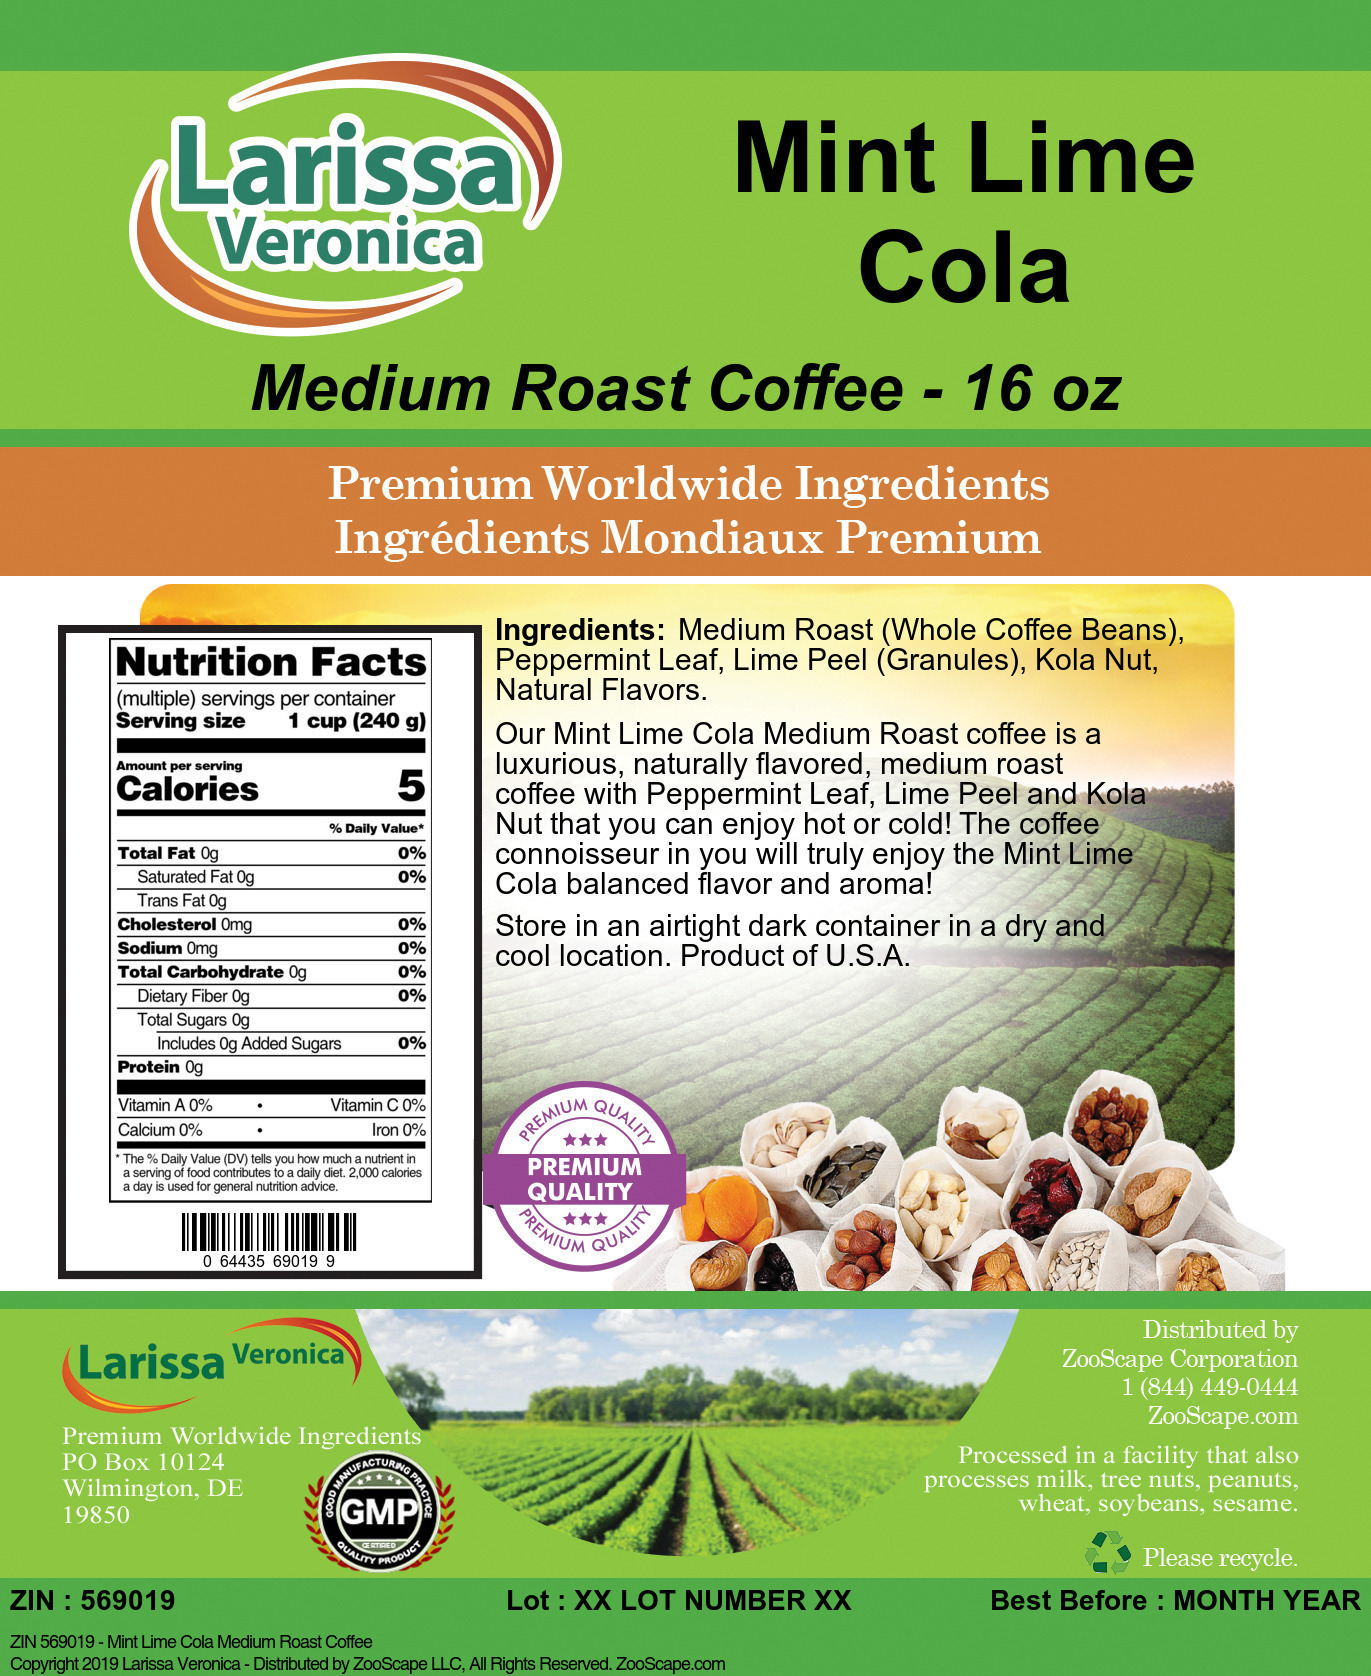 Mint Lime Cola Medium Roast Coffee - Label